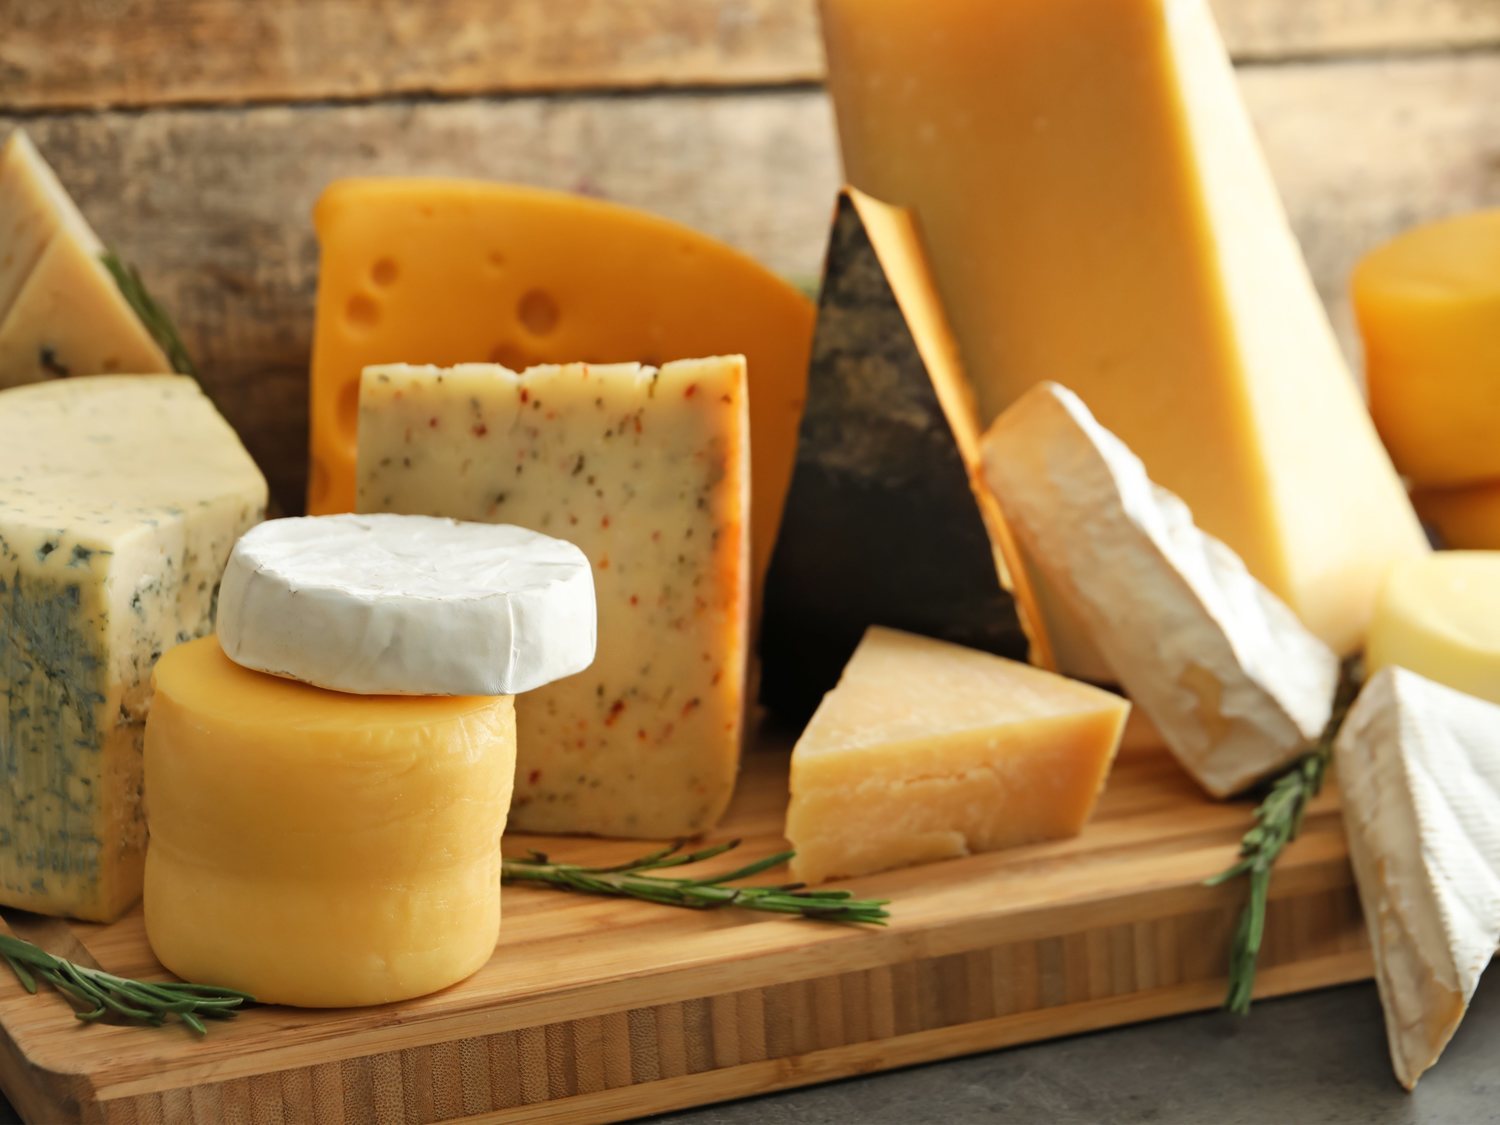 Nueva alerta sanitaria: retiran varios lotes de queso por listeriosis